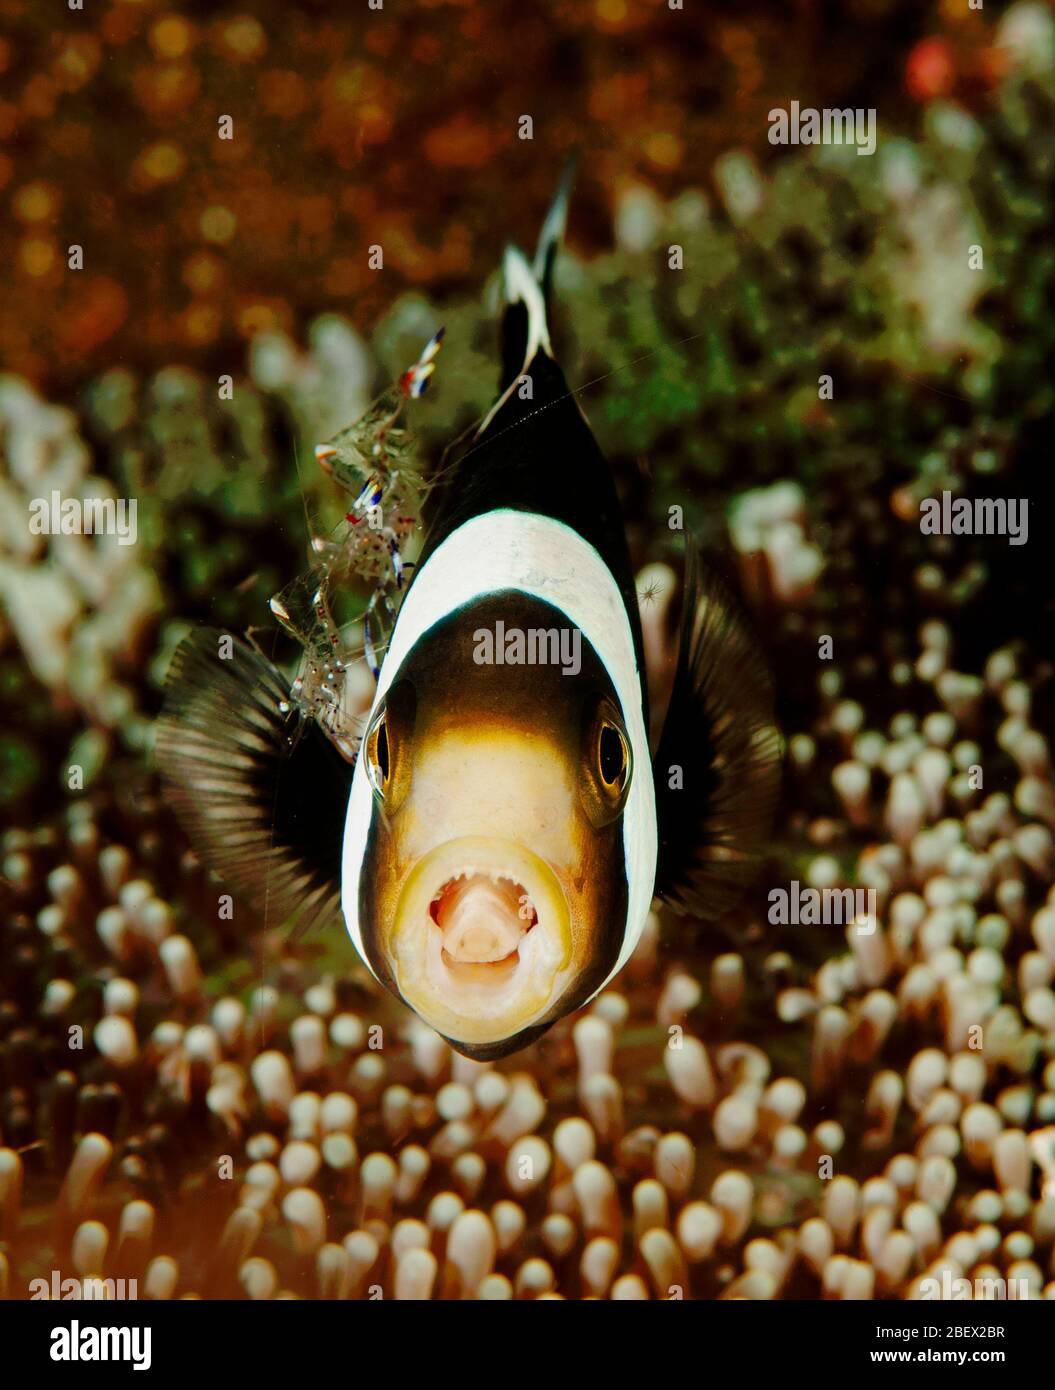 Clark Anemonenfischen Amphiprion Clarkii und sauberer Garnelen Periclimenes SP. Sulawesi Indonesien Stockfoto